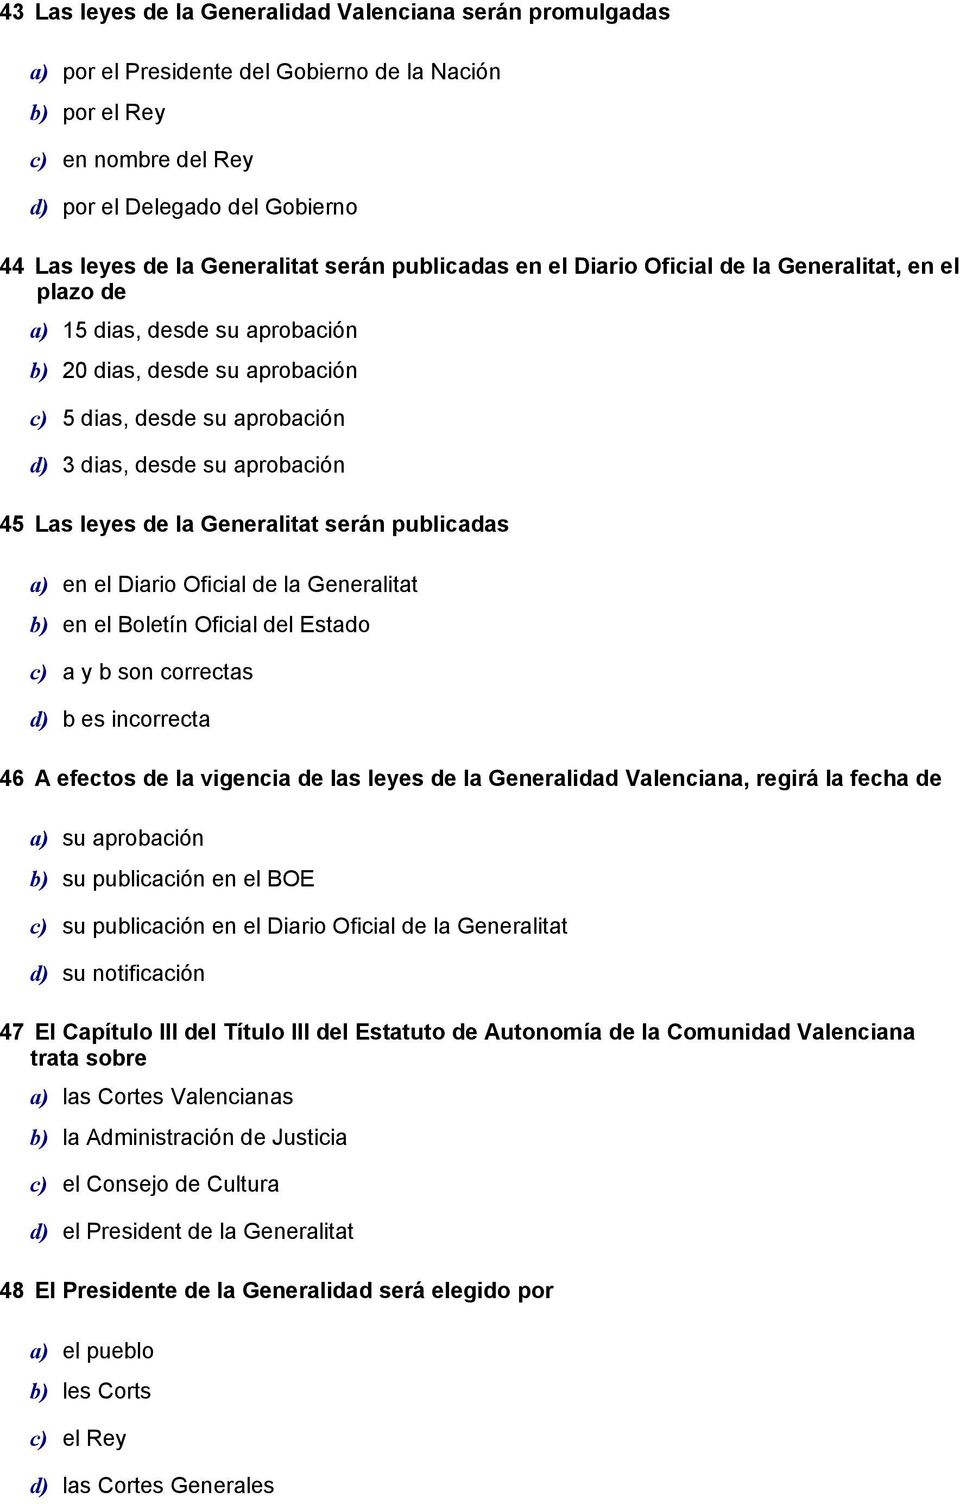 aprobación 45 Las leyes de la Generalitat serán publicadas a) en el Diario Oficial de la Generalitat b) en el Boletín Oficial del Estado c) a y b son correctas d) b es incorrecta 46 A efectos de la